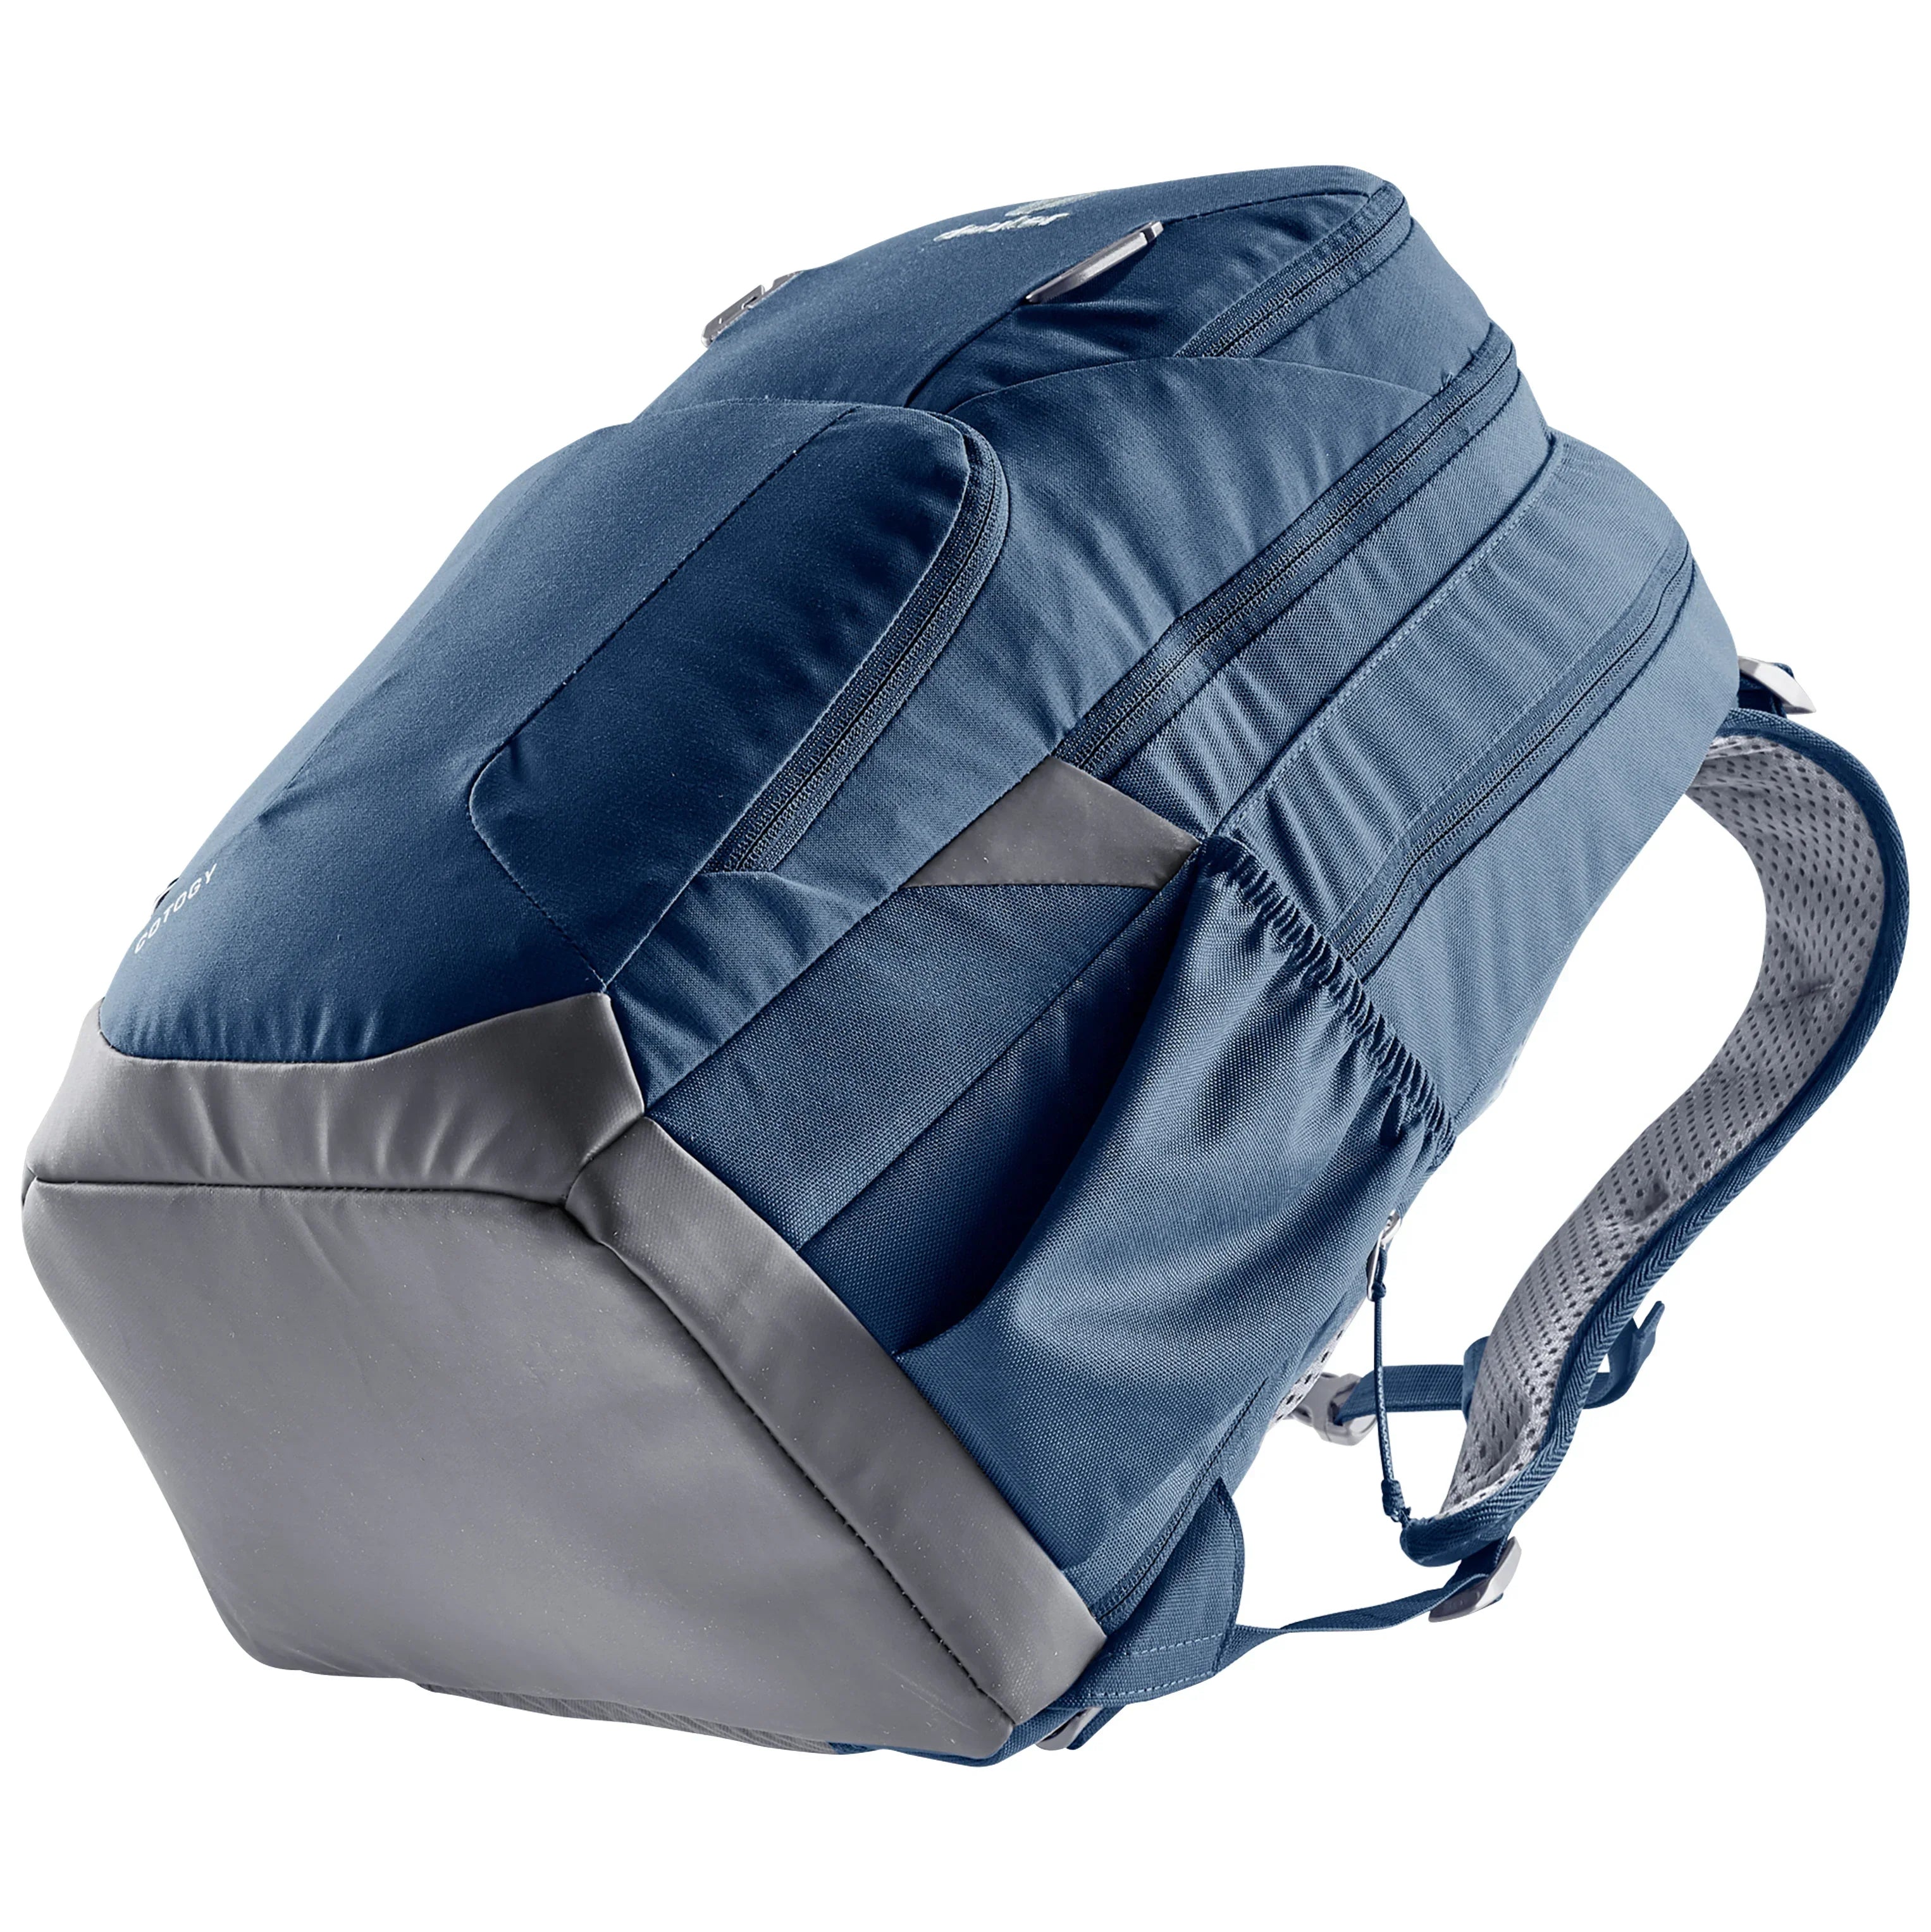 Deuter Daypack Cotogy sac à dos scolaire 46 cm - Vague